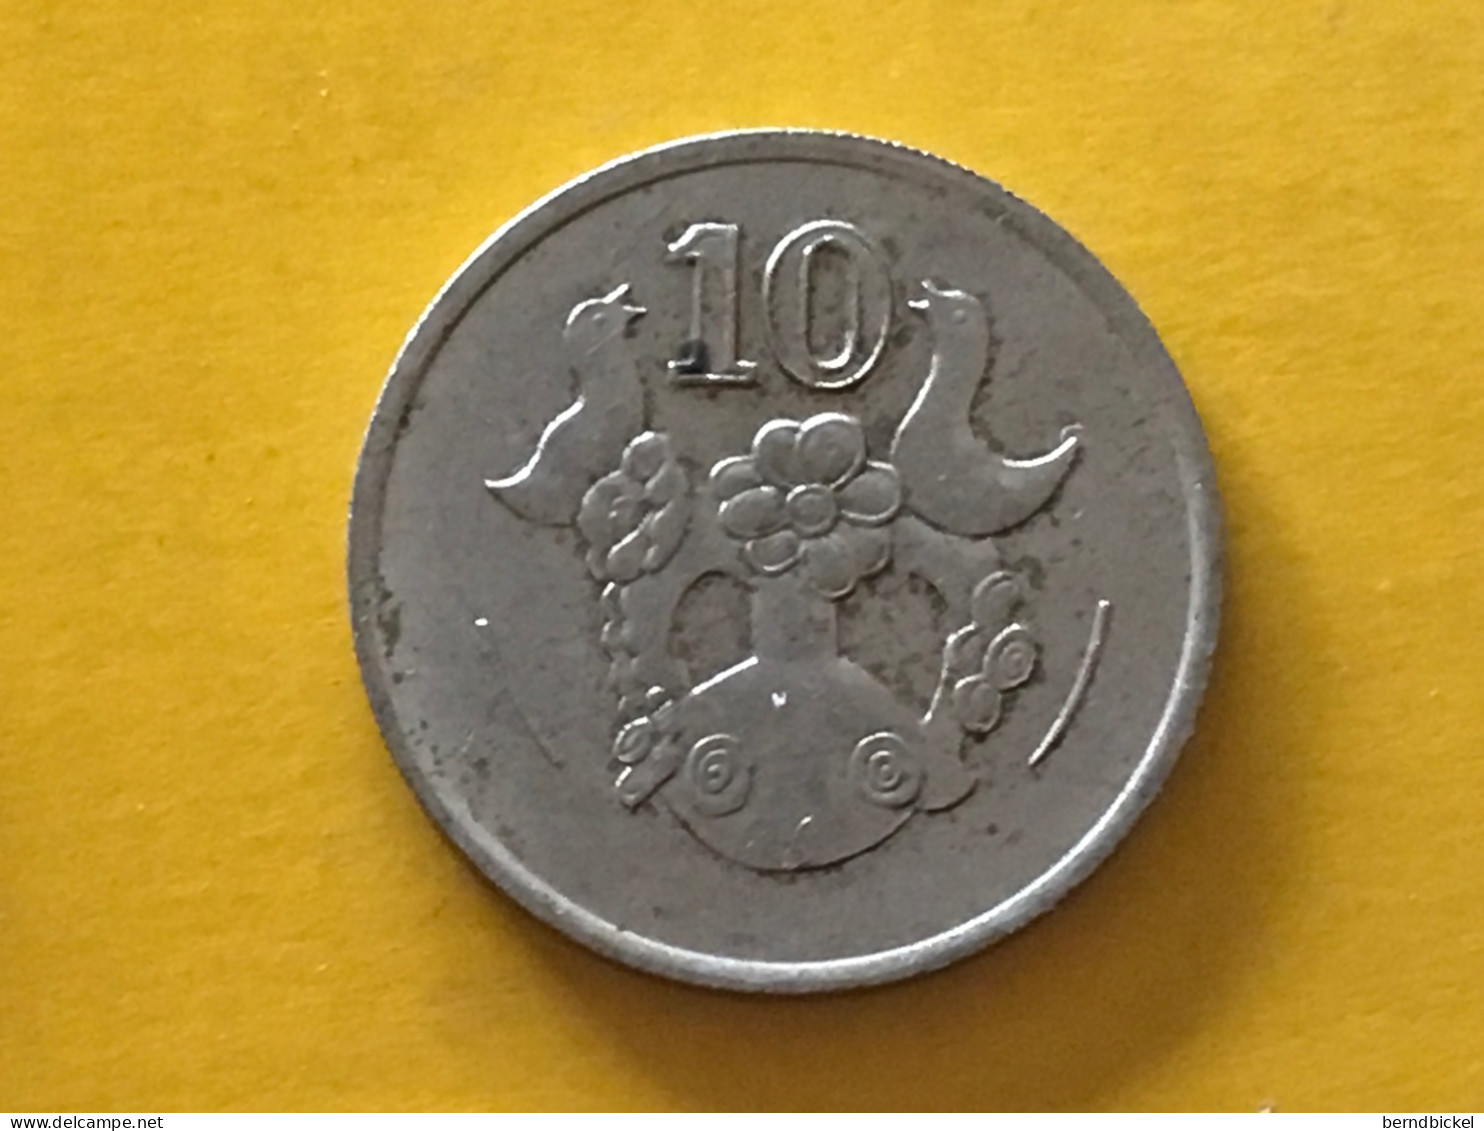 Münze Münzen Umlaufmünze Zypern 10 Cent 1993 - Zypern